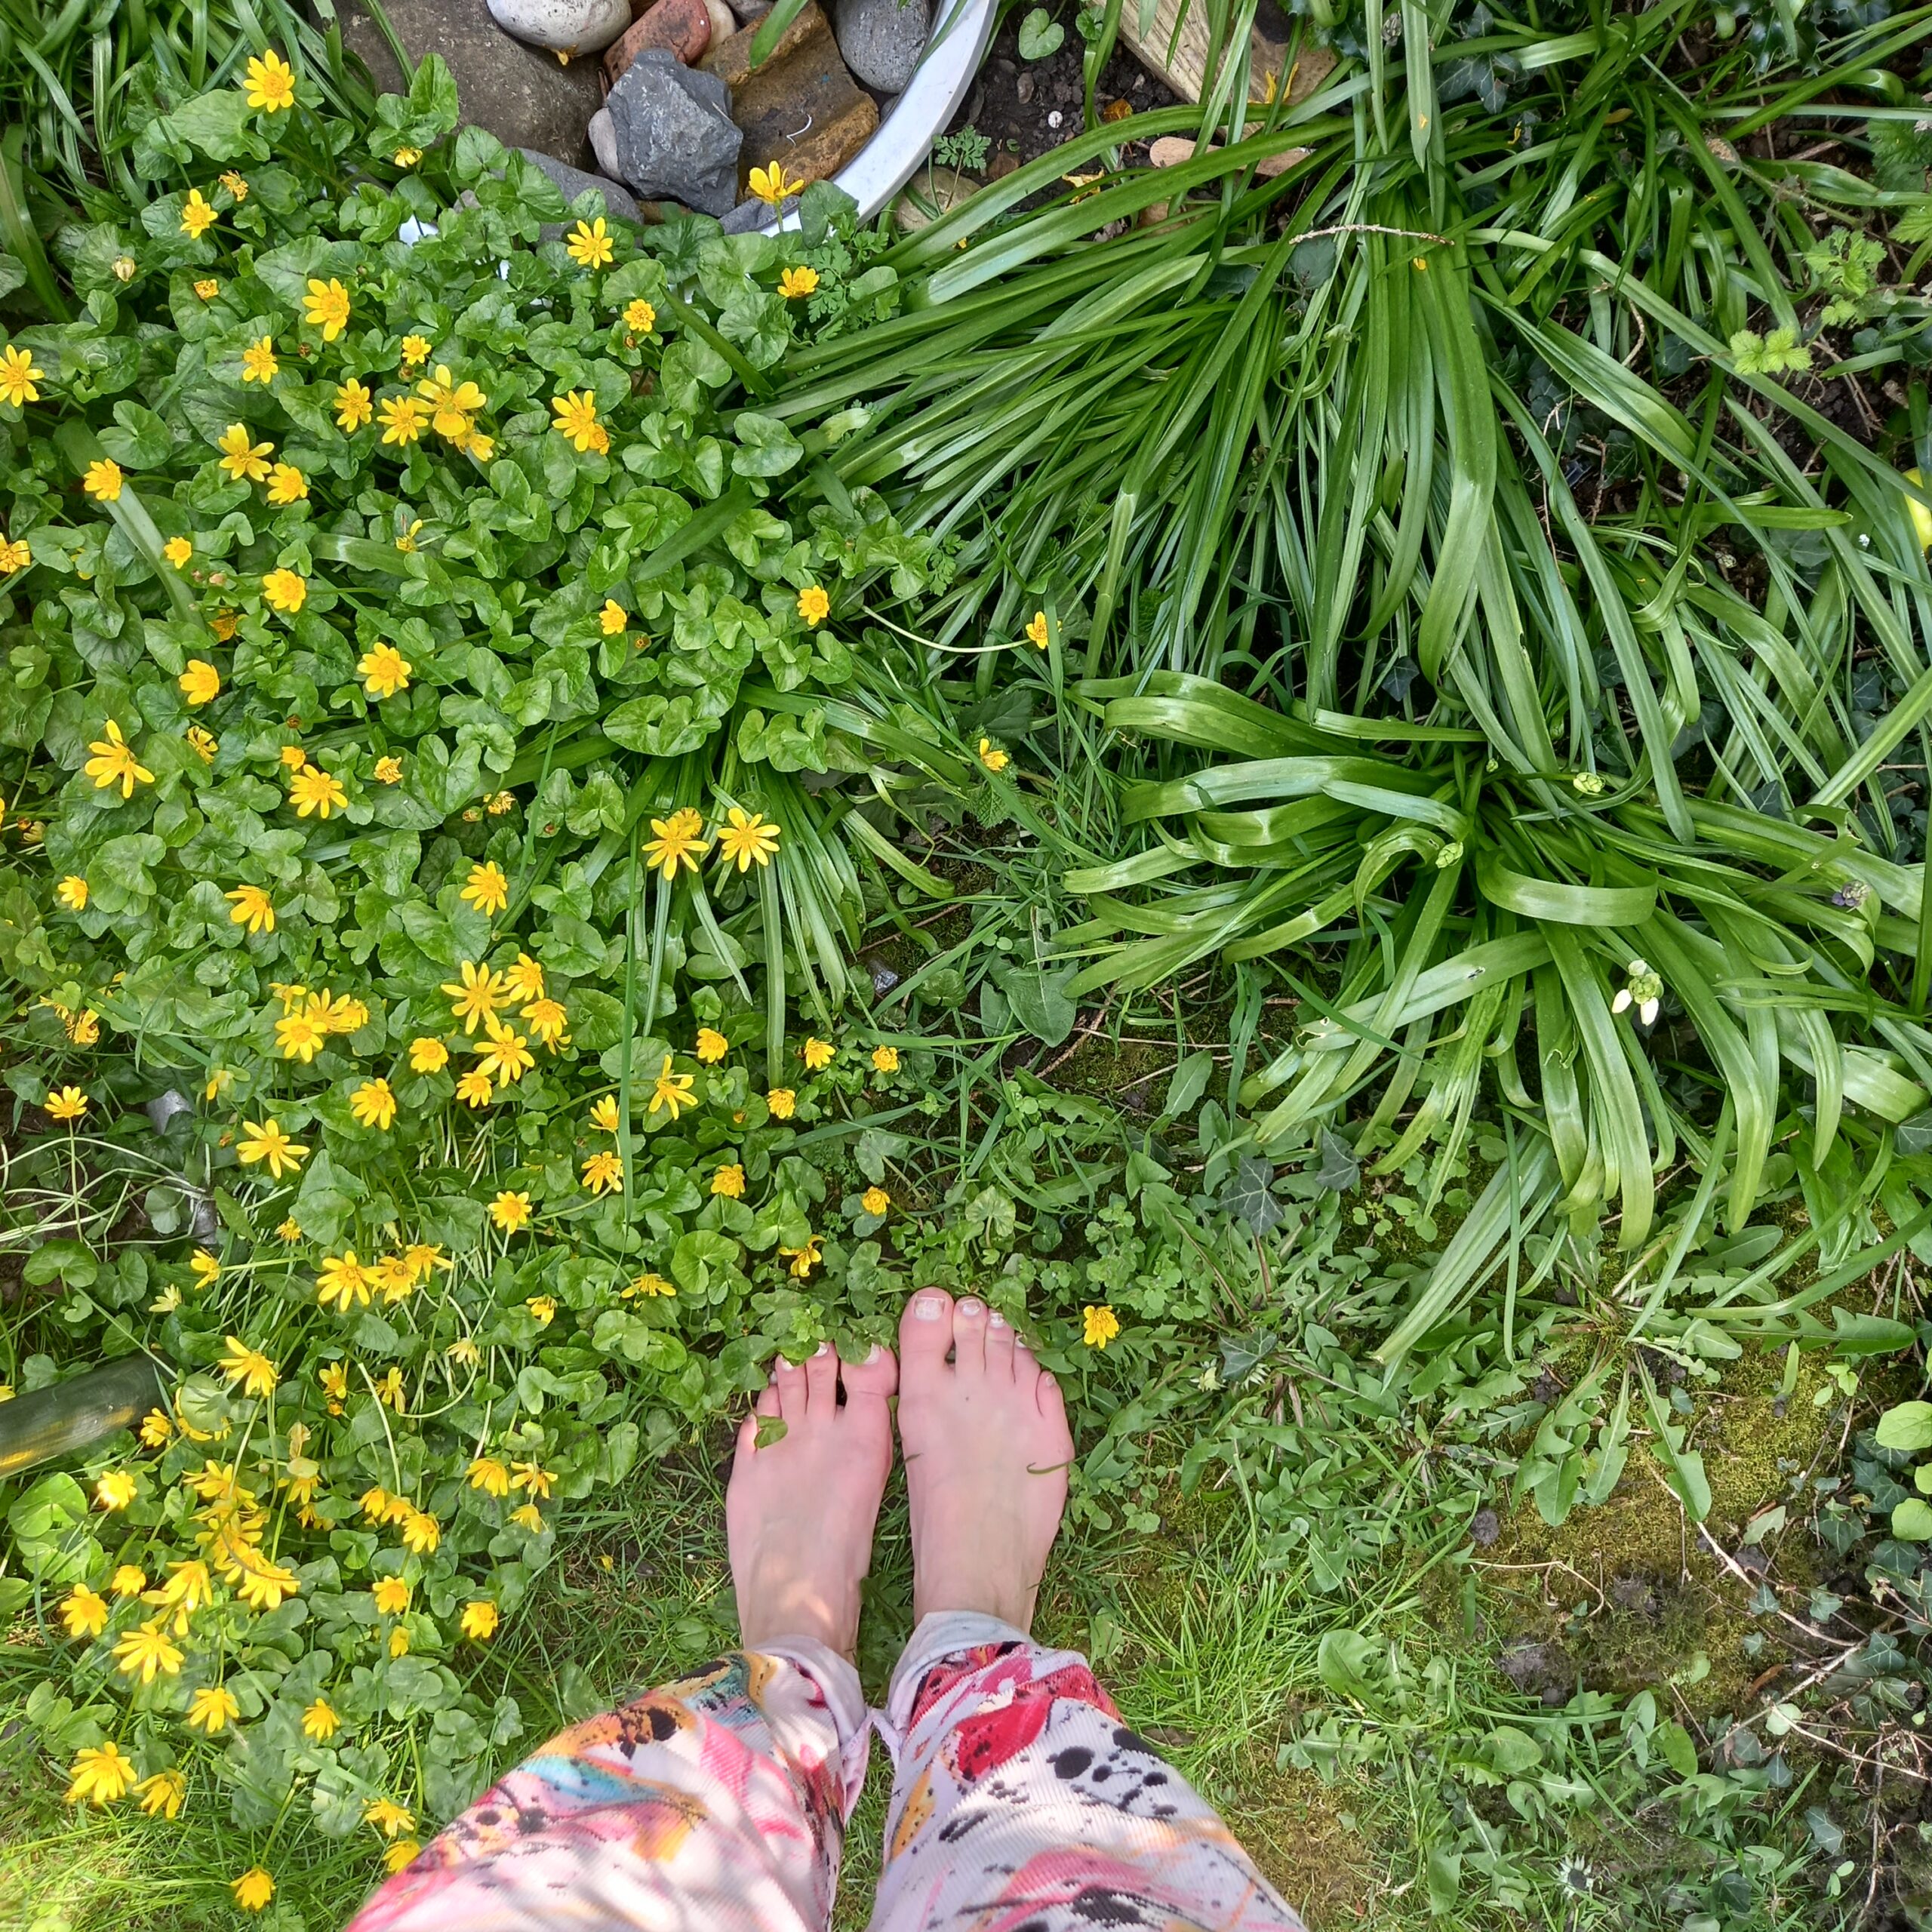 bare feet, grounding, earthing, wild flowers, celandine